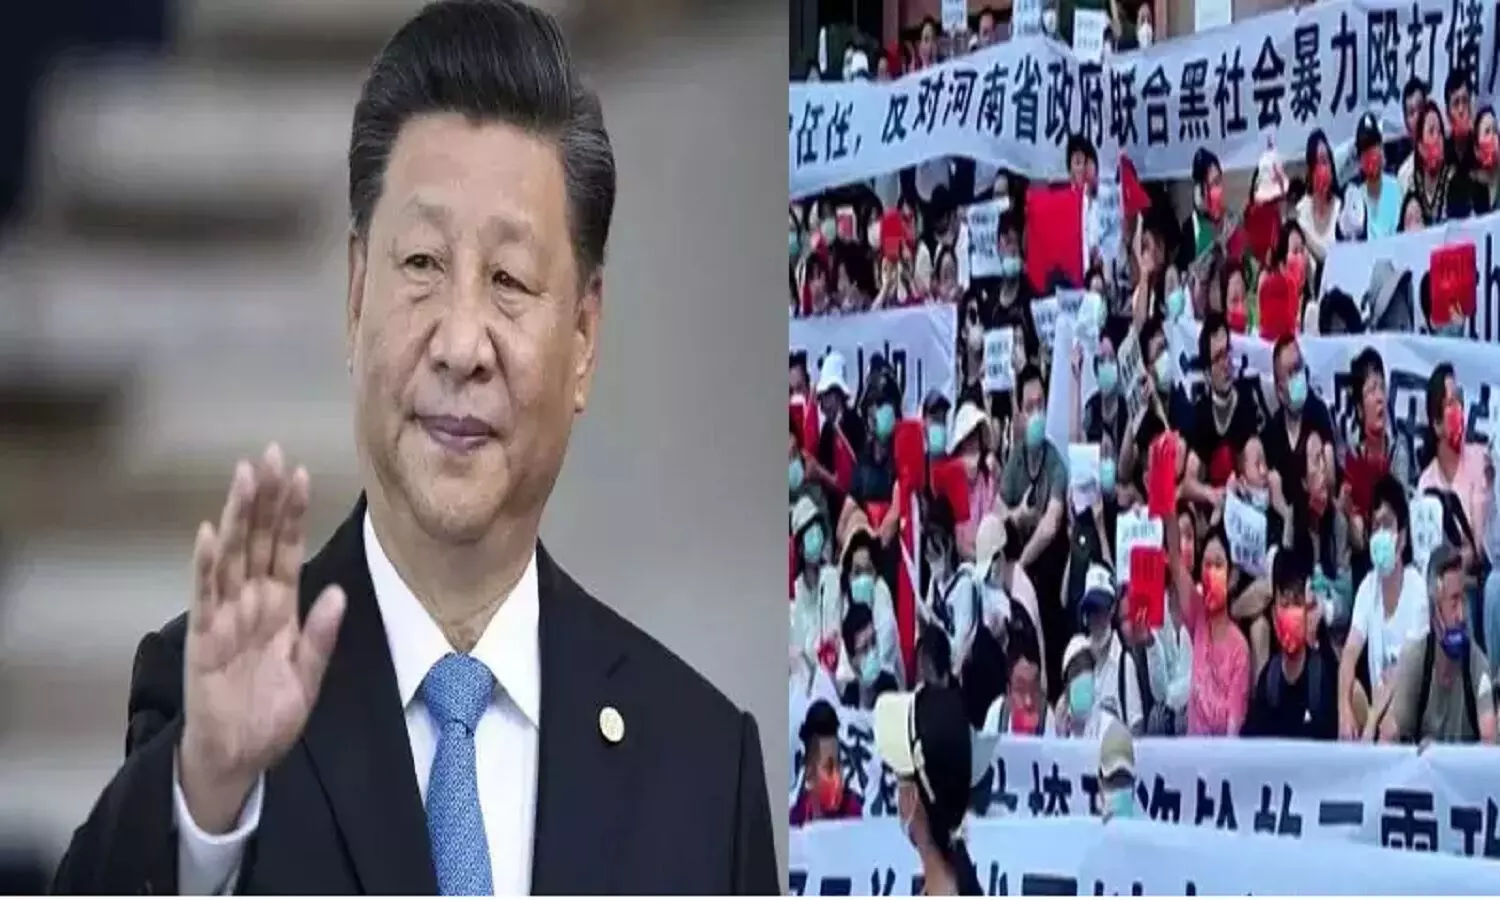 चीन में राष्ट्रपति शी जिनपिंग के खिलाफ भयंकर विरोध चल रहा, जनता कह रही लोकतंत्र चाहिए तानाशाही नहीं, इस्तीफा दो